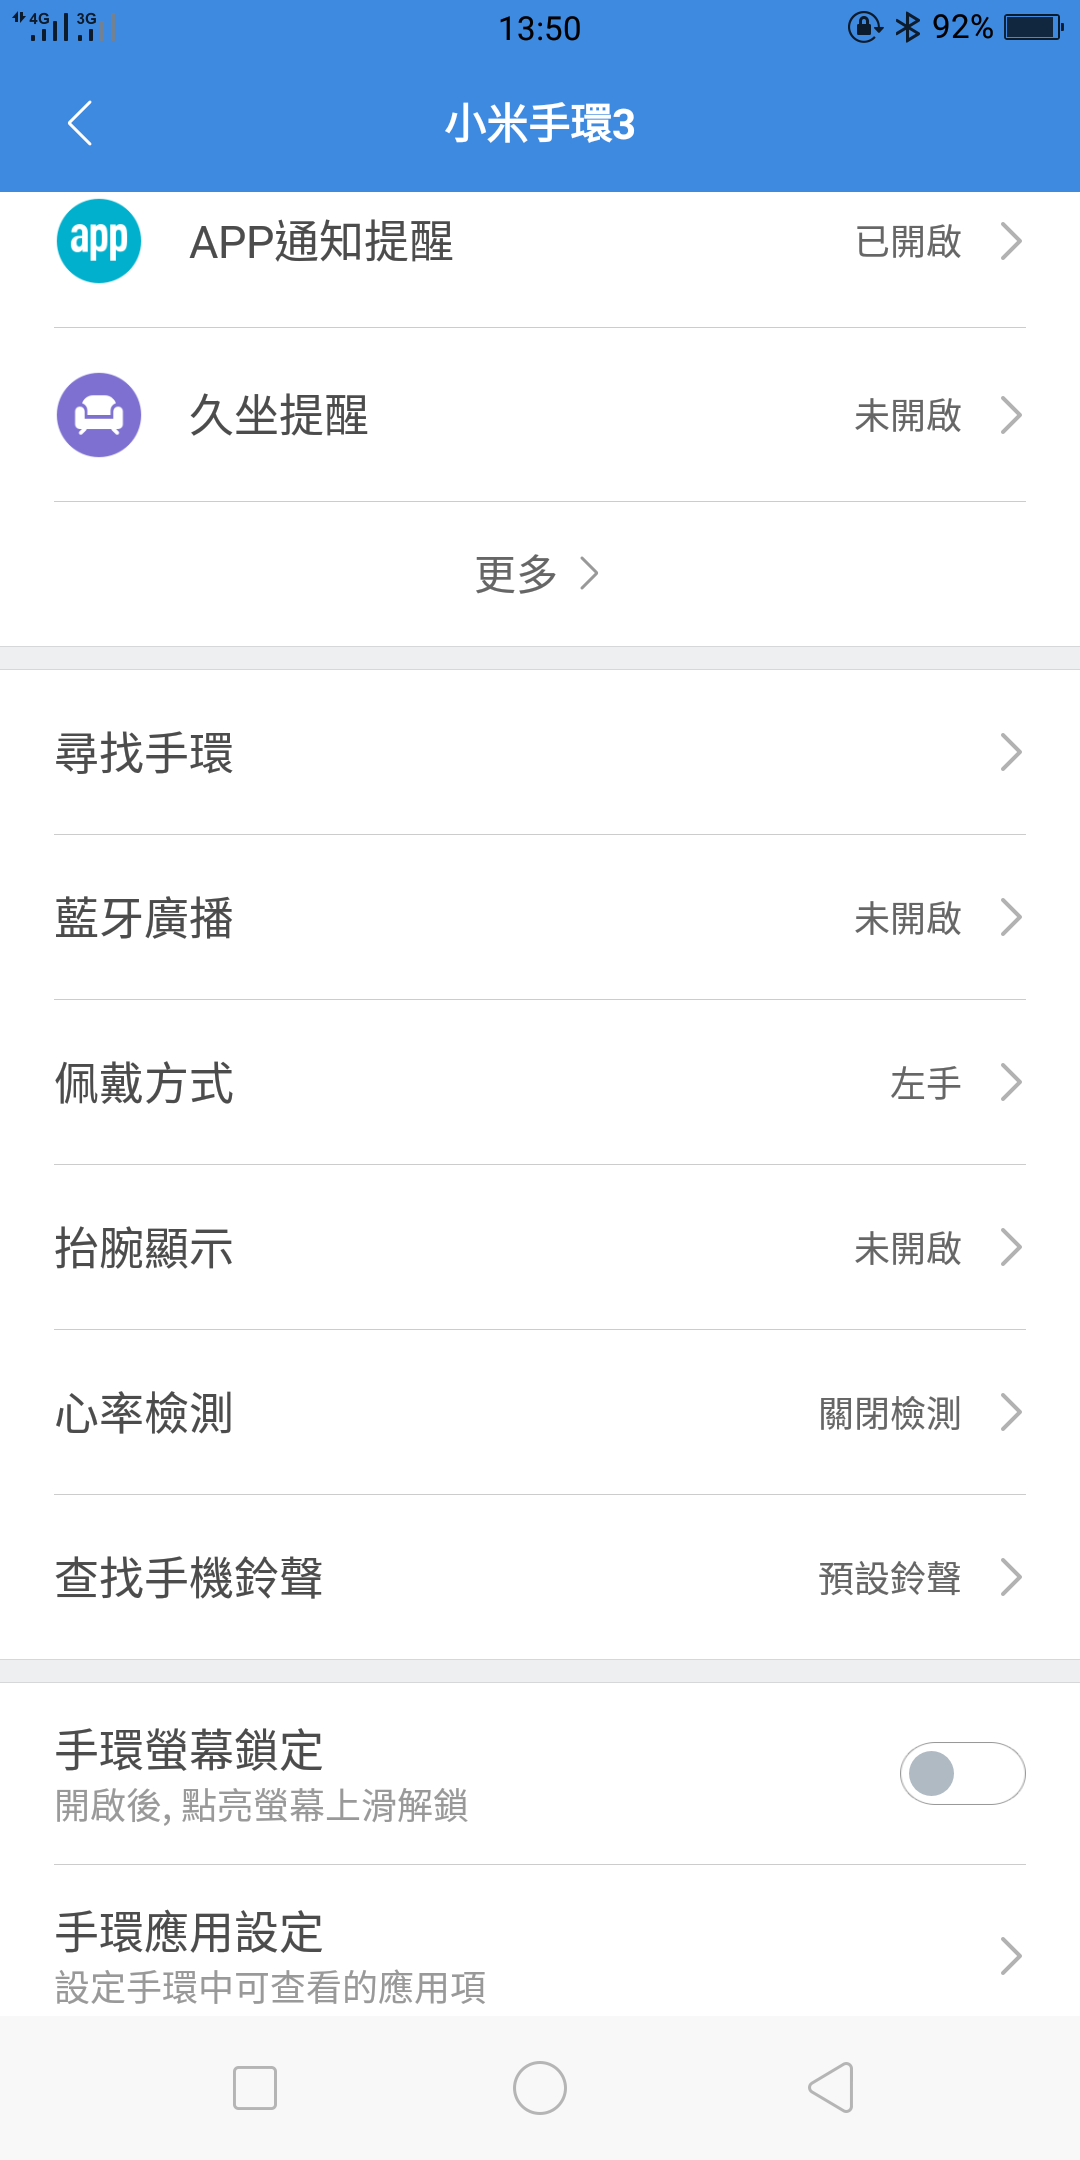 小米手環3 搶先入手 台灣開箱啦!!可以顯示FB、line電話內容還有繁體字內容! - 小米運動 - 敗家達人推薦